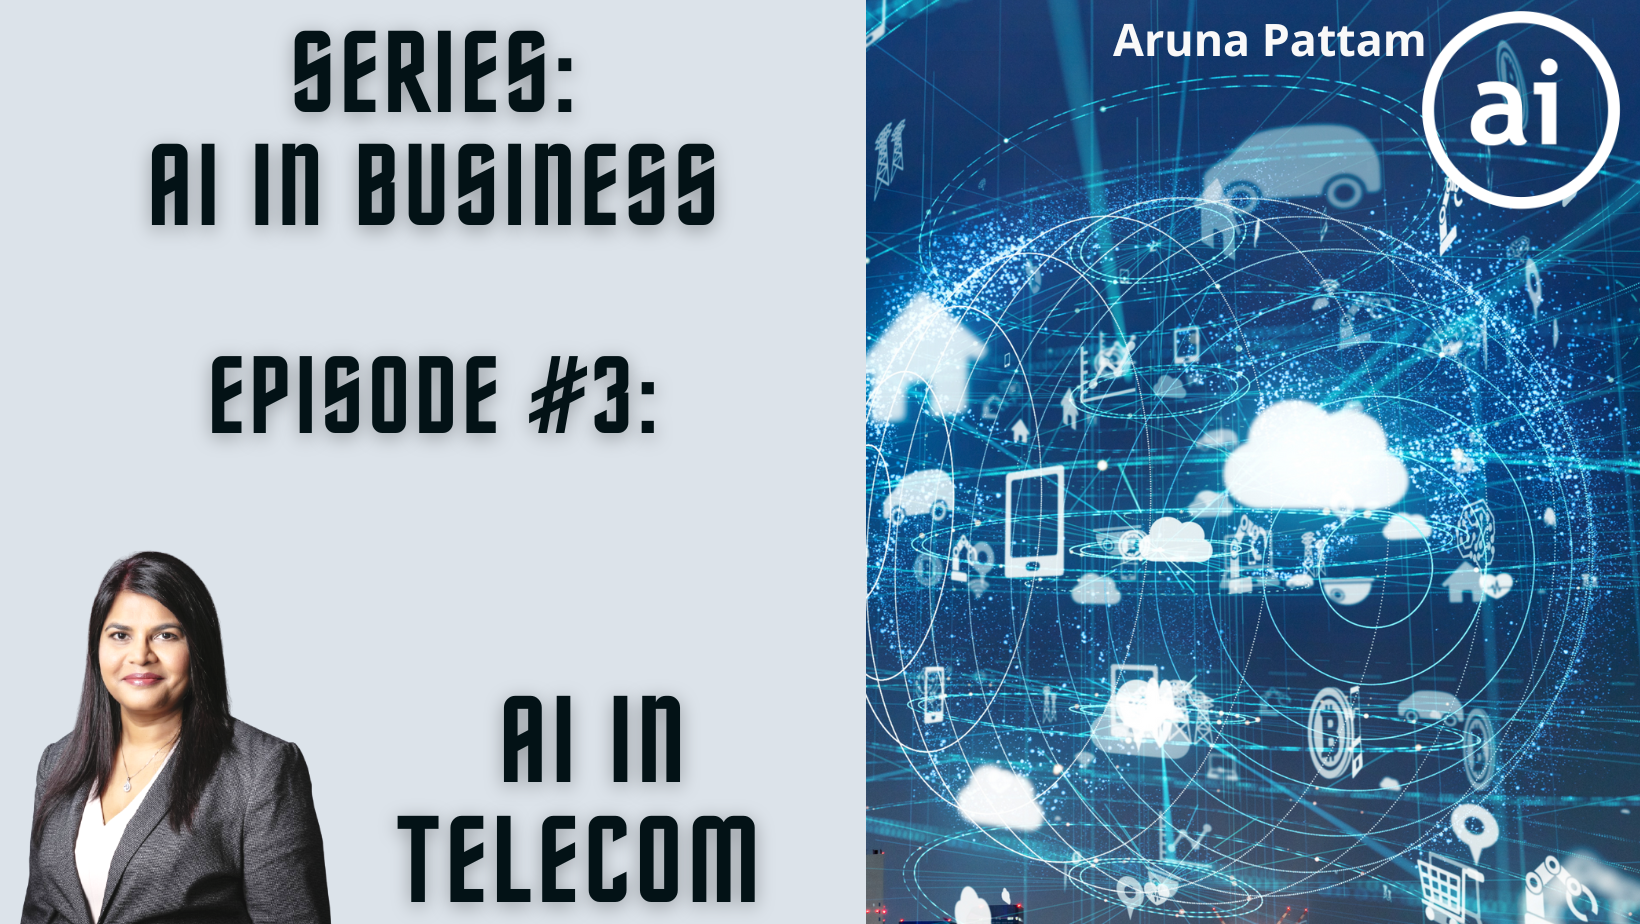 AI in Business Series: Episode #3. AI in Telecom